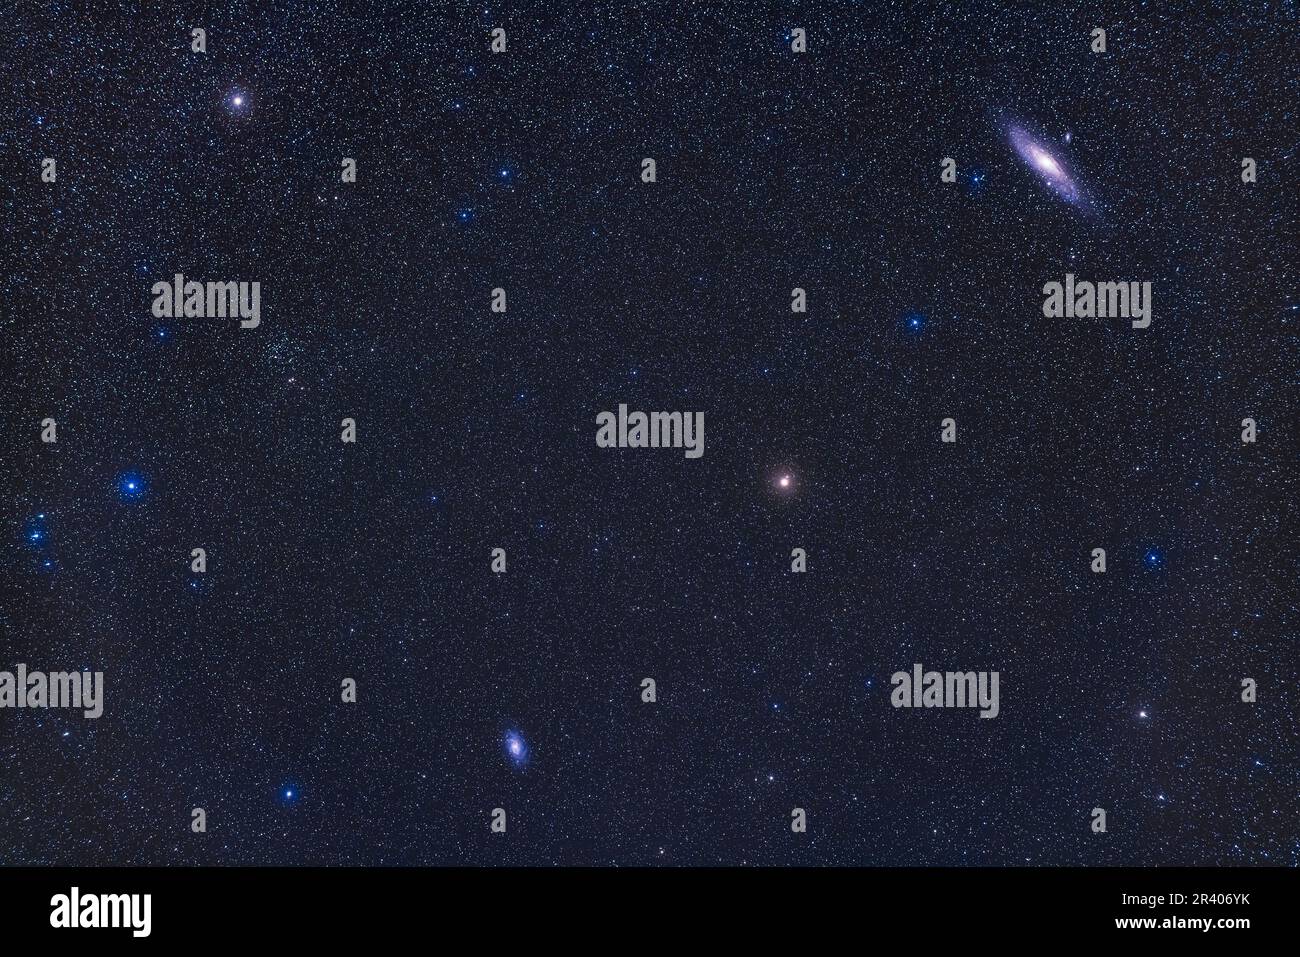 Ein Bild von Andromeda und Triangulum, das beide Galaxien zeigt. Stockfoto